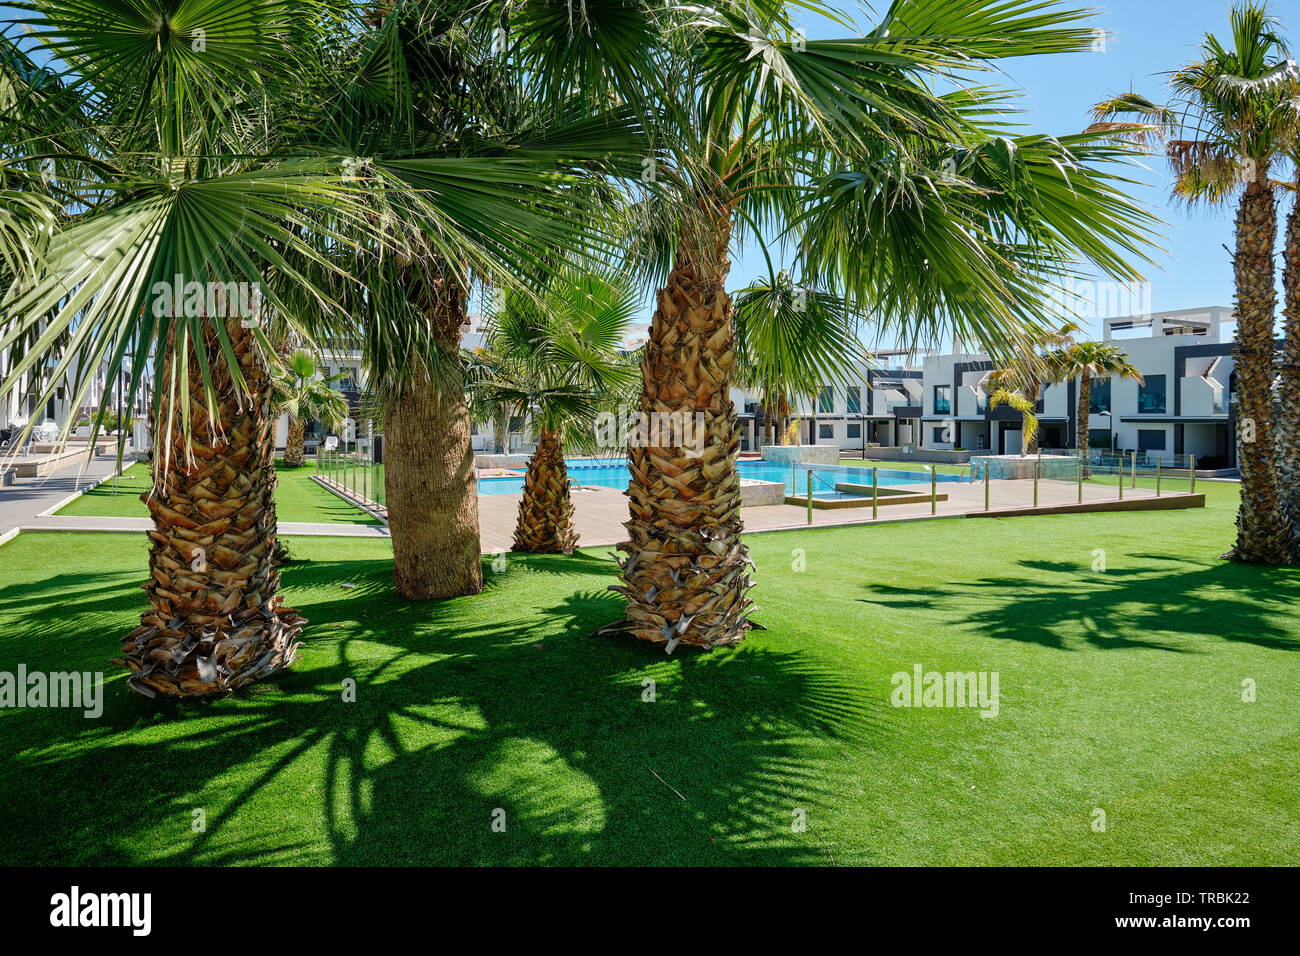 Jardins de palmiers à l'intérieur de l'urbanisation fermée avec pelouse verte piscine maisons modernes de jour d'été. Nouvelle propriété en Espagne, pas de personnes. Espagne Banque D'Images